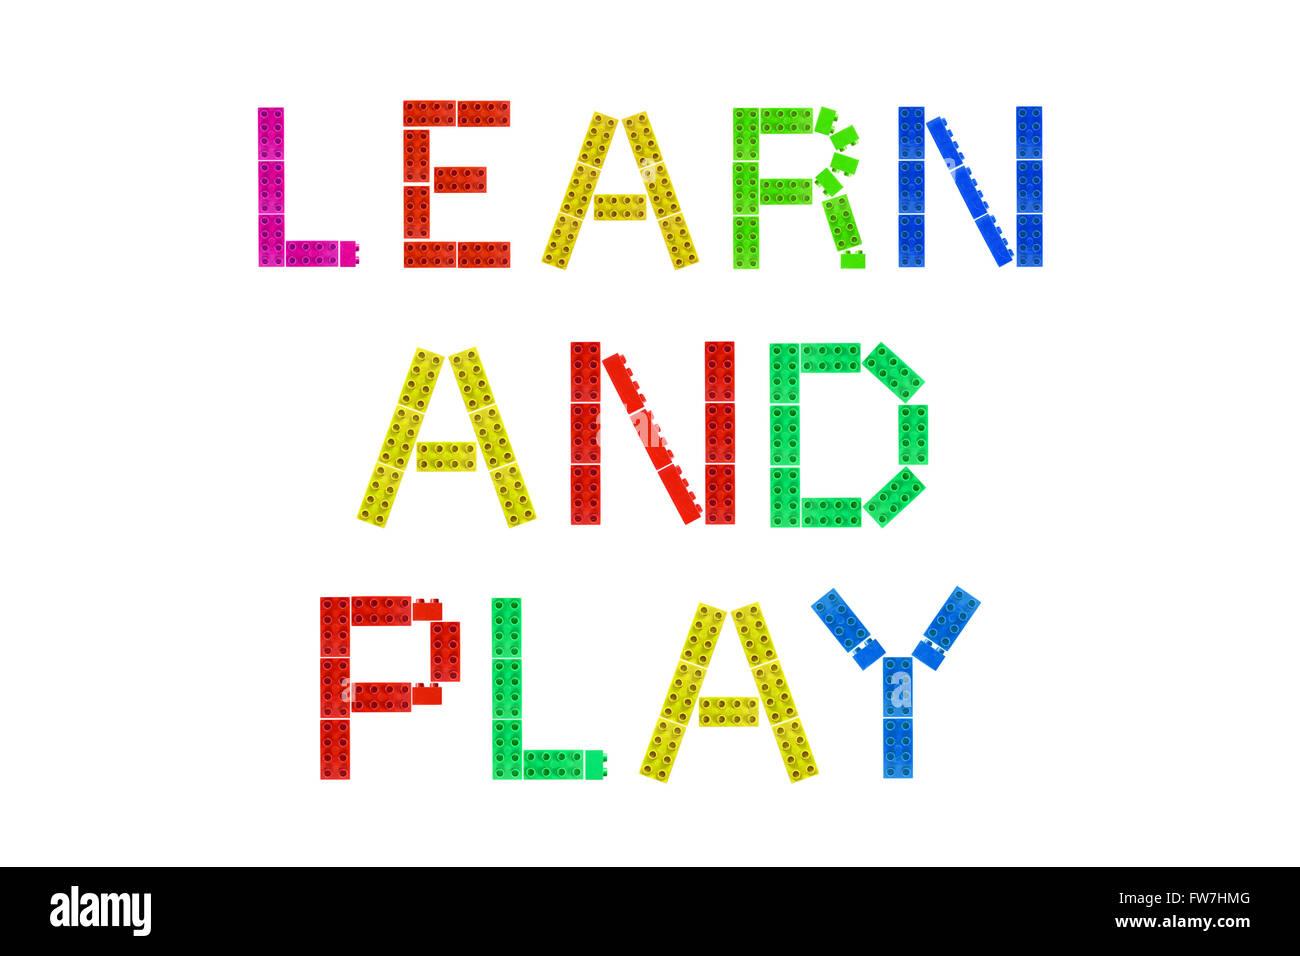 Lernen und spielen aus Lego-Steinen auf einem weißen Hintergrund fotografiert. Stockfoto